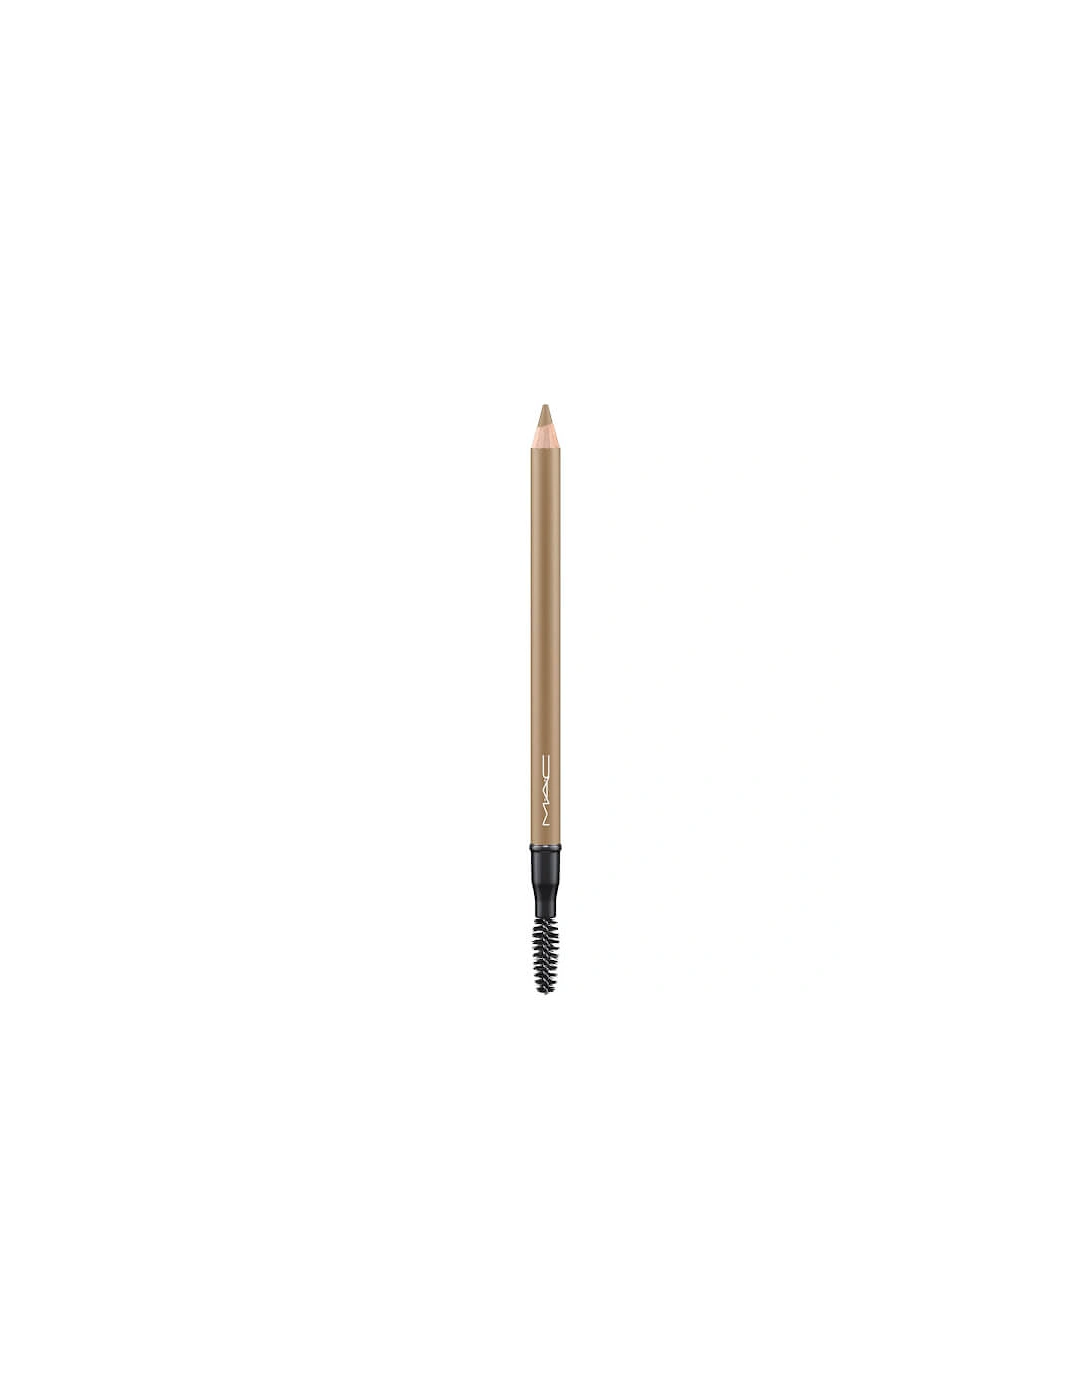 Veluxe Brow Pencil - Fling, 2 of 1